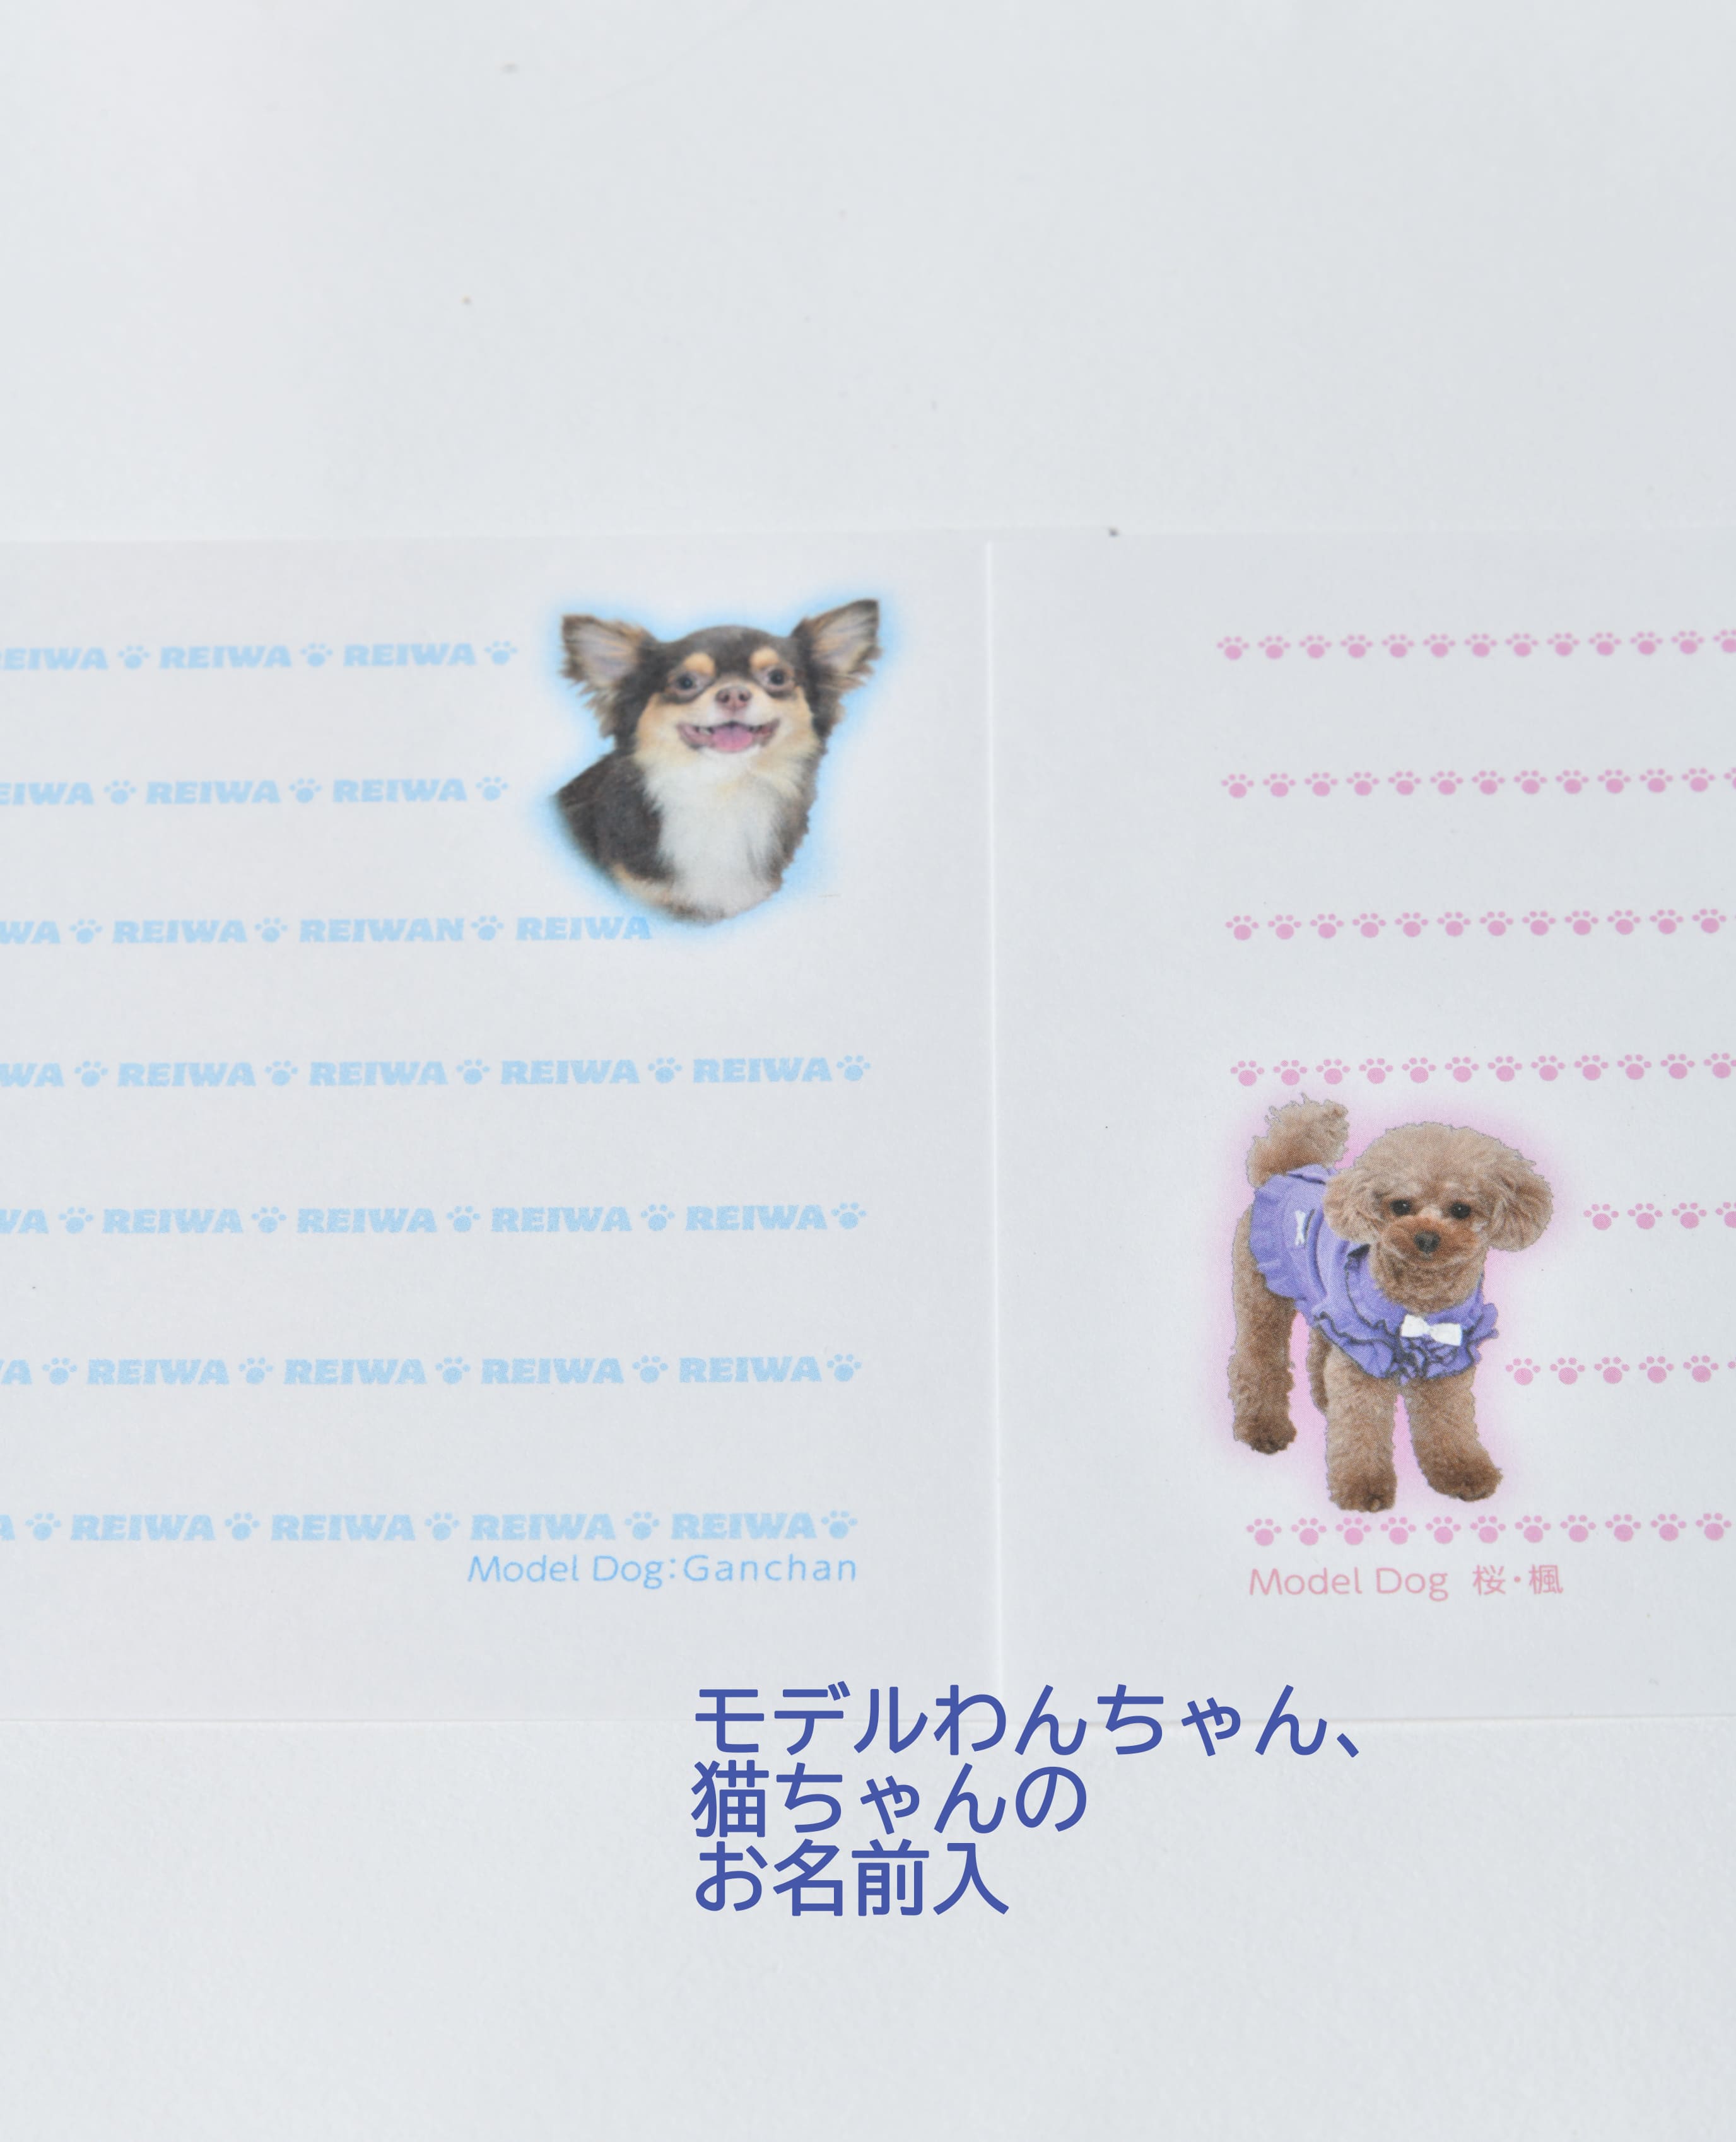 犬猫写真の一筆箋「わんにゃん筆箋」お家の犬猫の写真でオリジナル作成